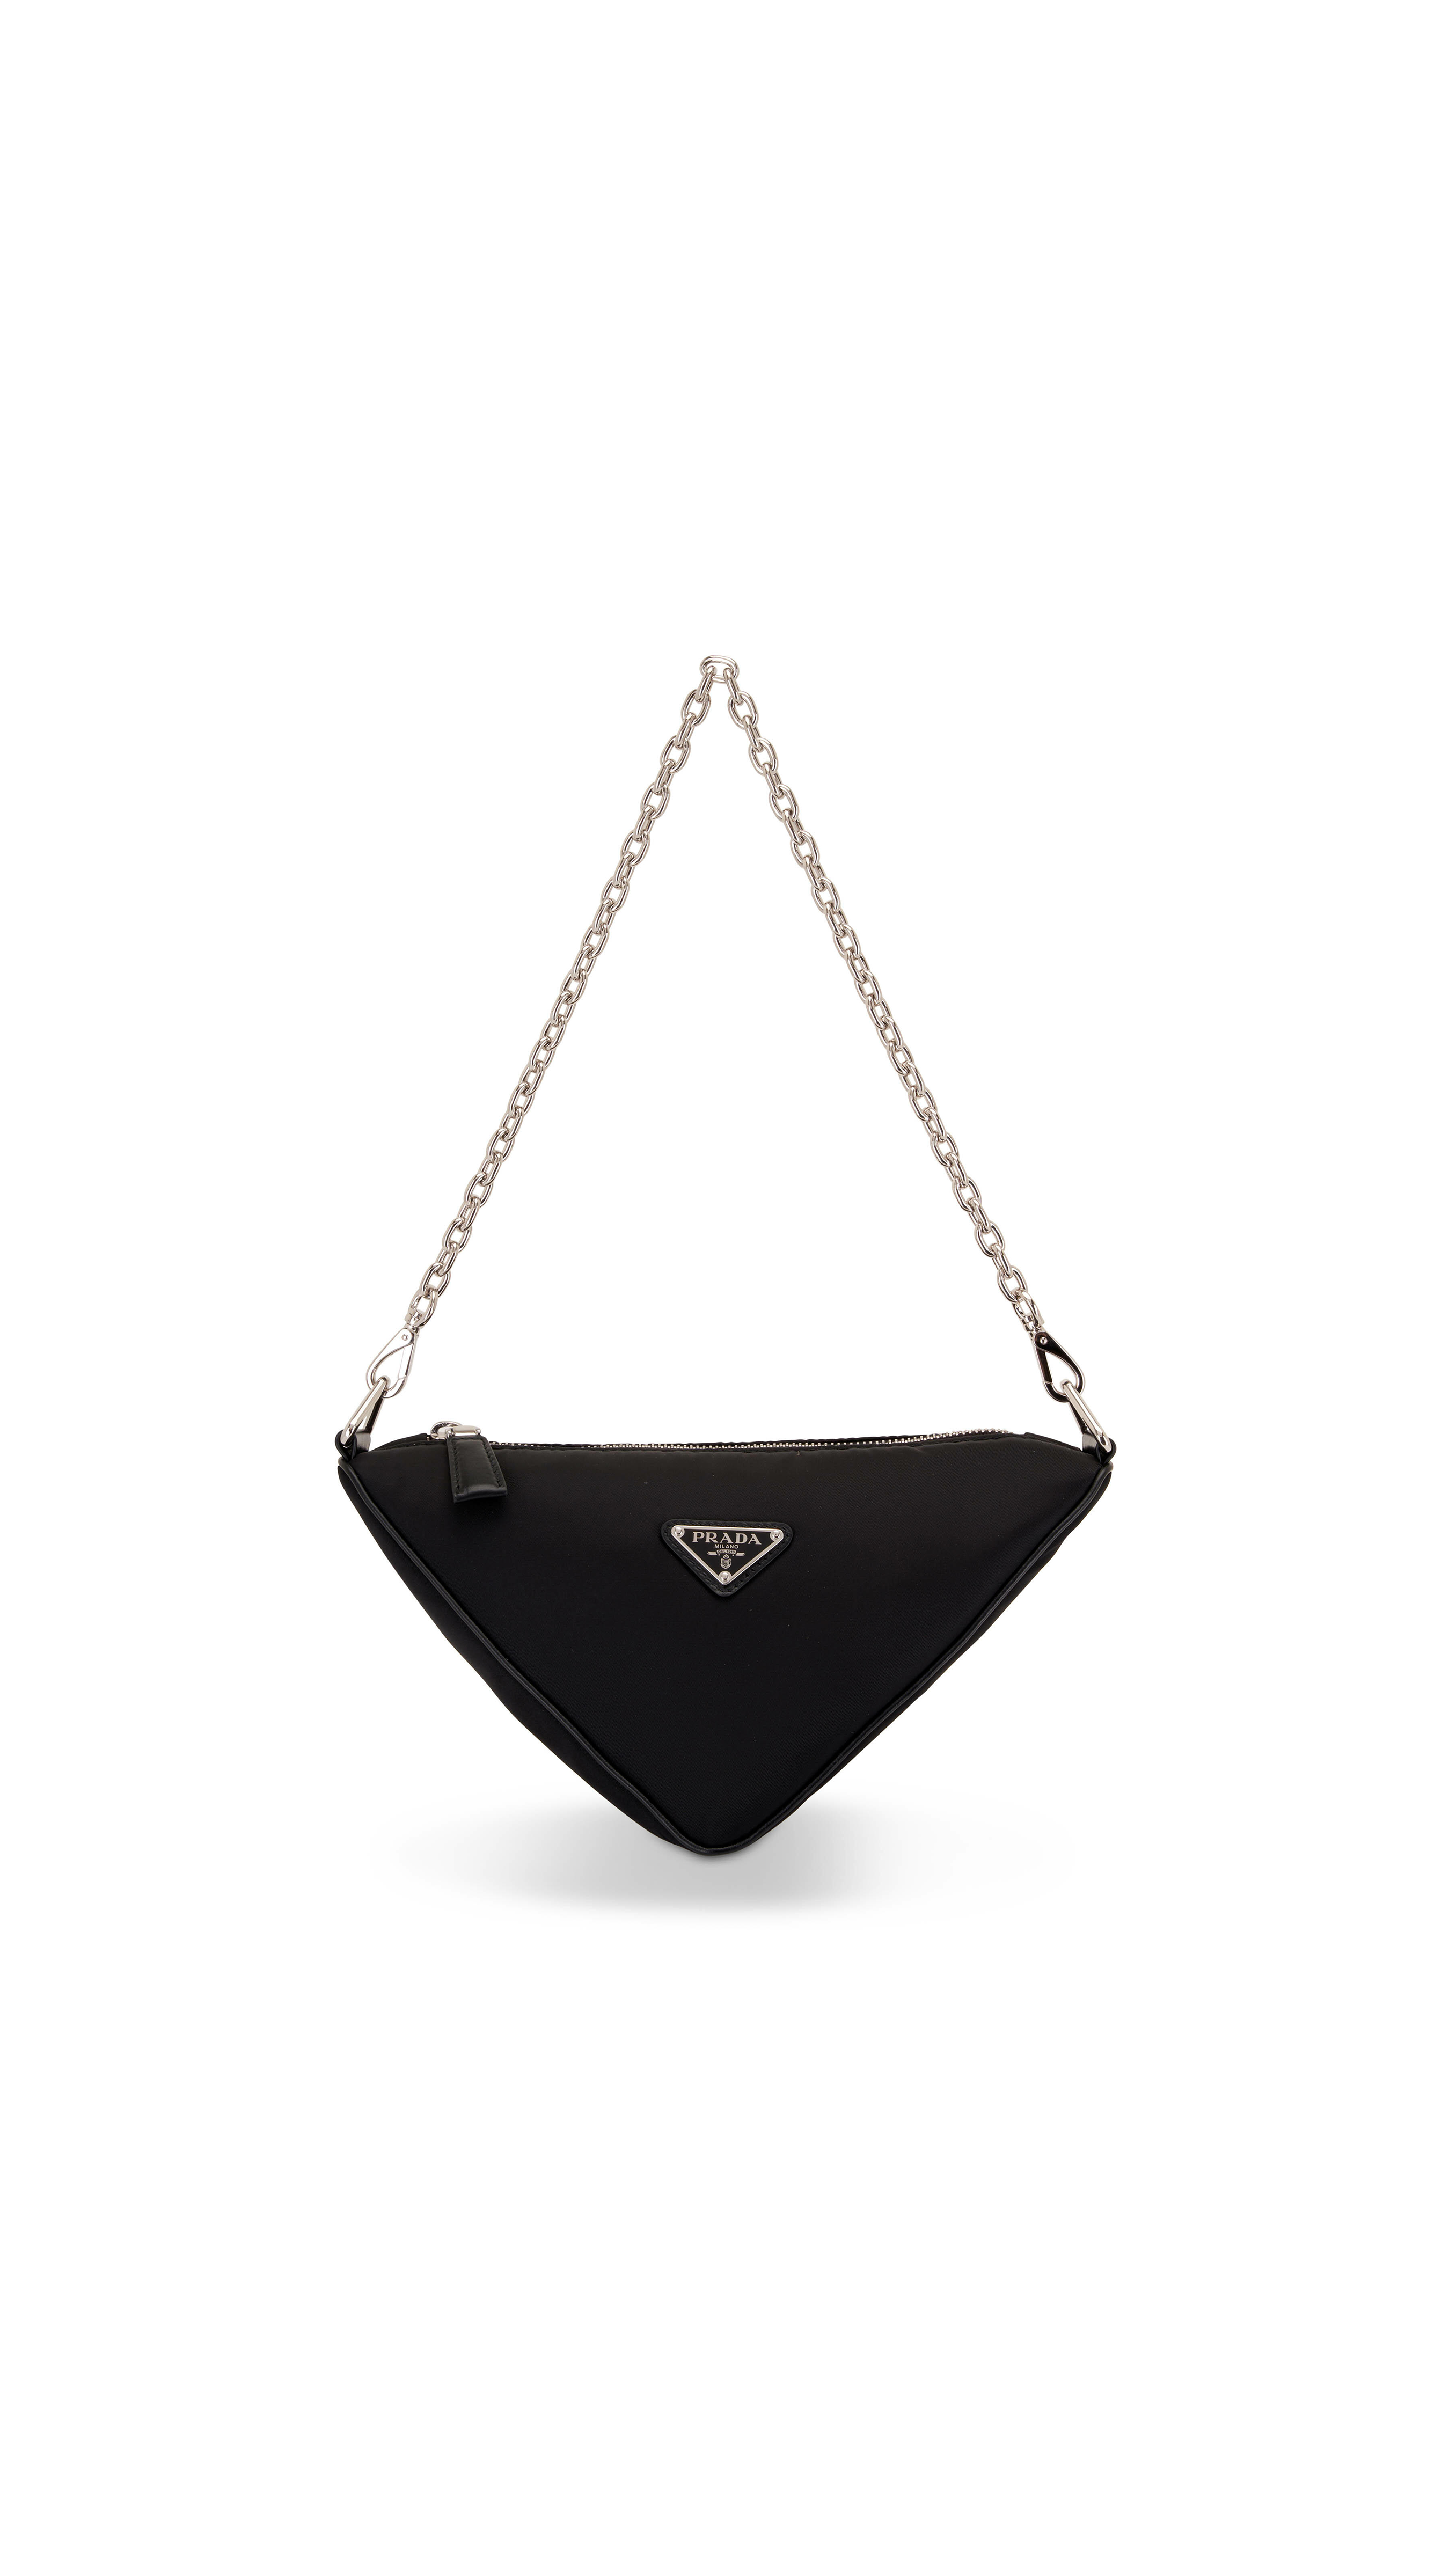 Prada Triangle Chained Clutch Bag in Black